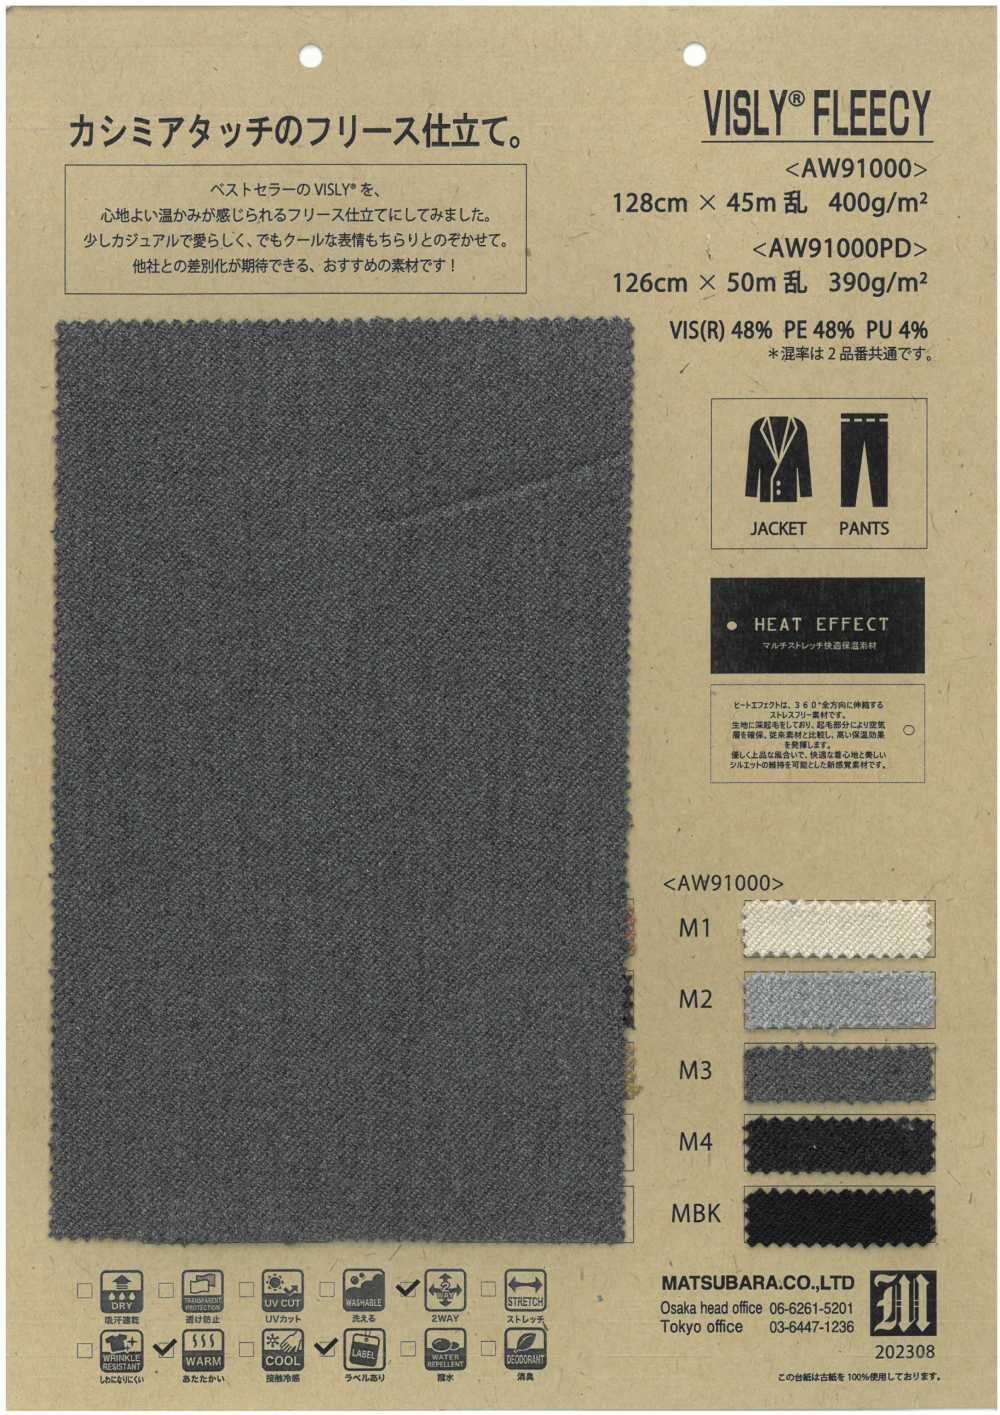 AW91000PD VISLY®️FLEECY[Tessile / Tessuto] Matsubara